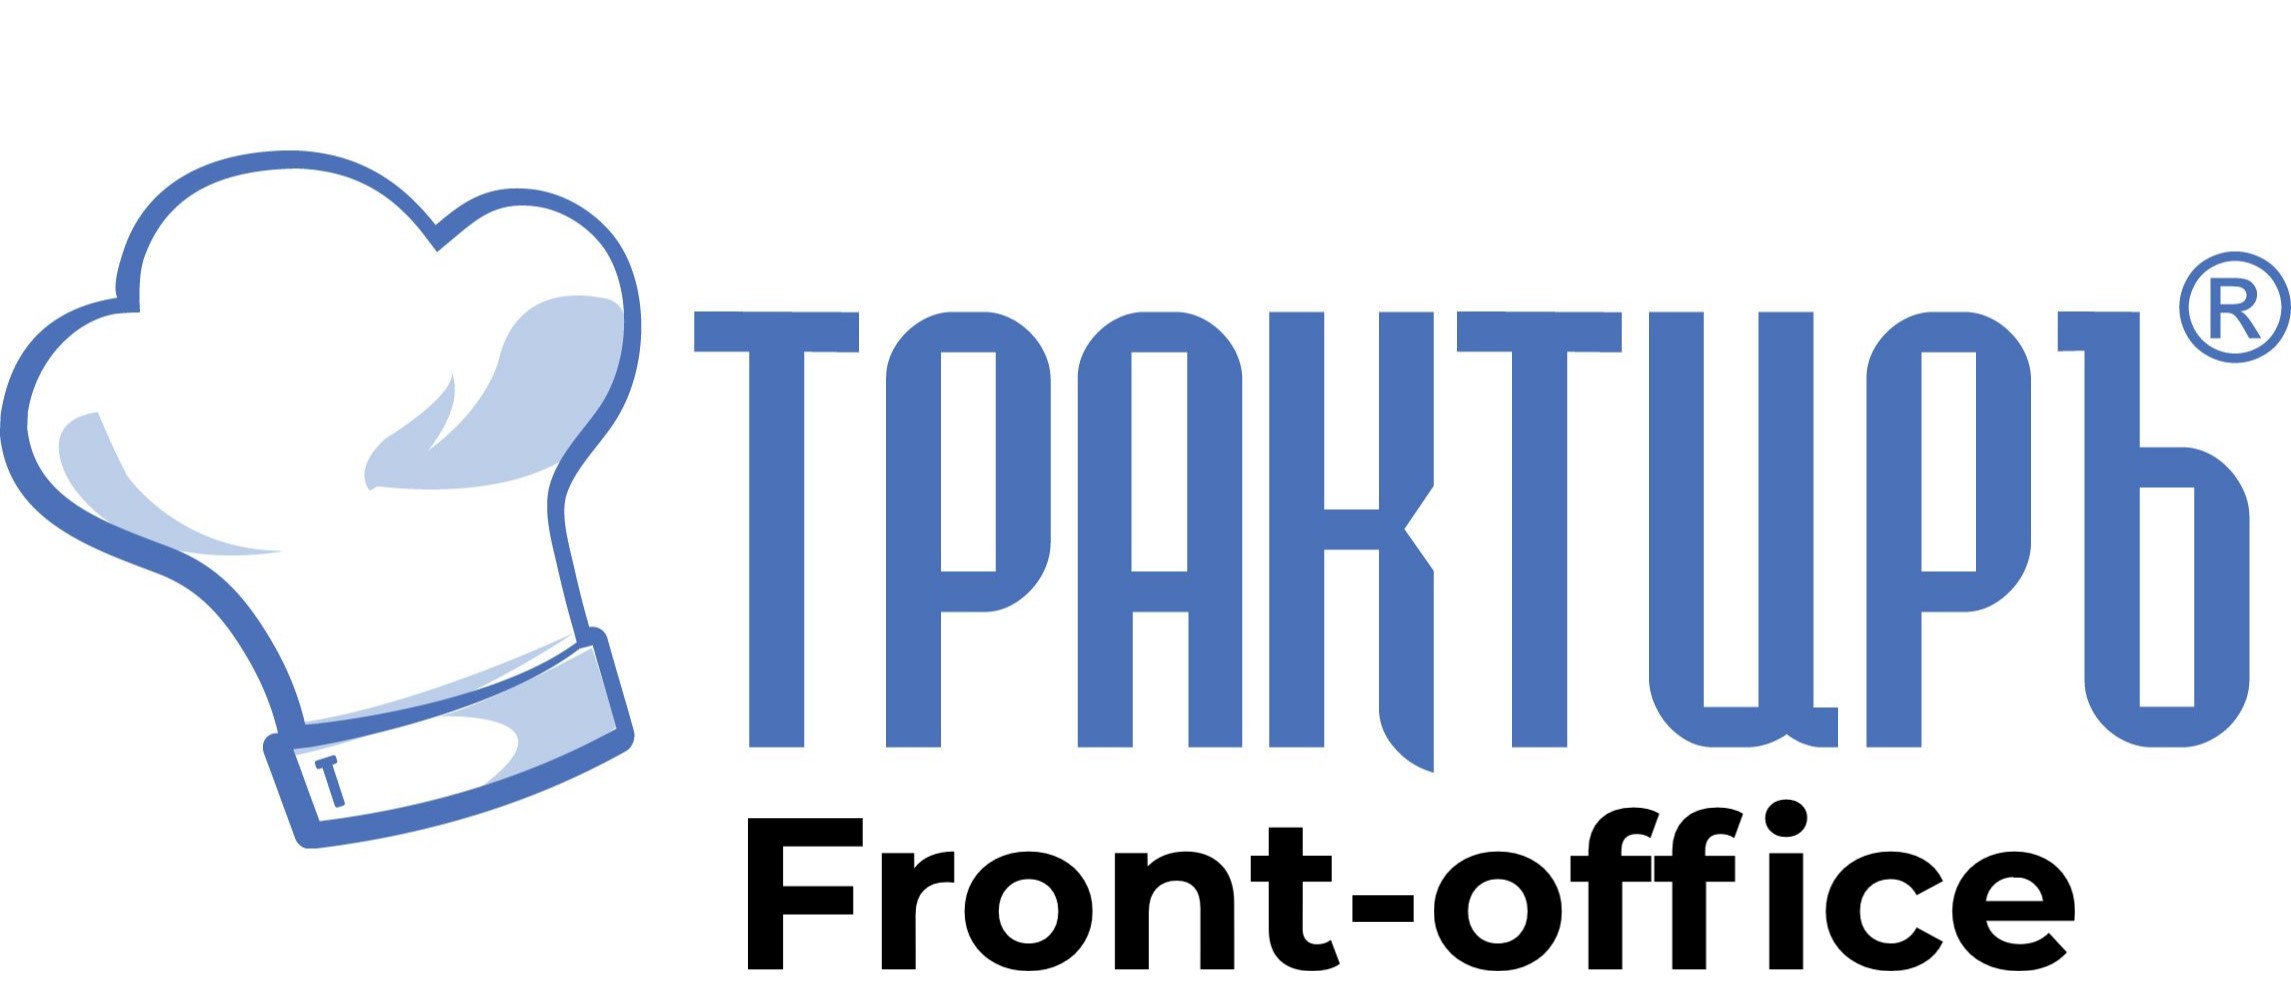 Трактиръ: Front-Office v4.5  Основная поставка в Перми